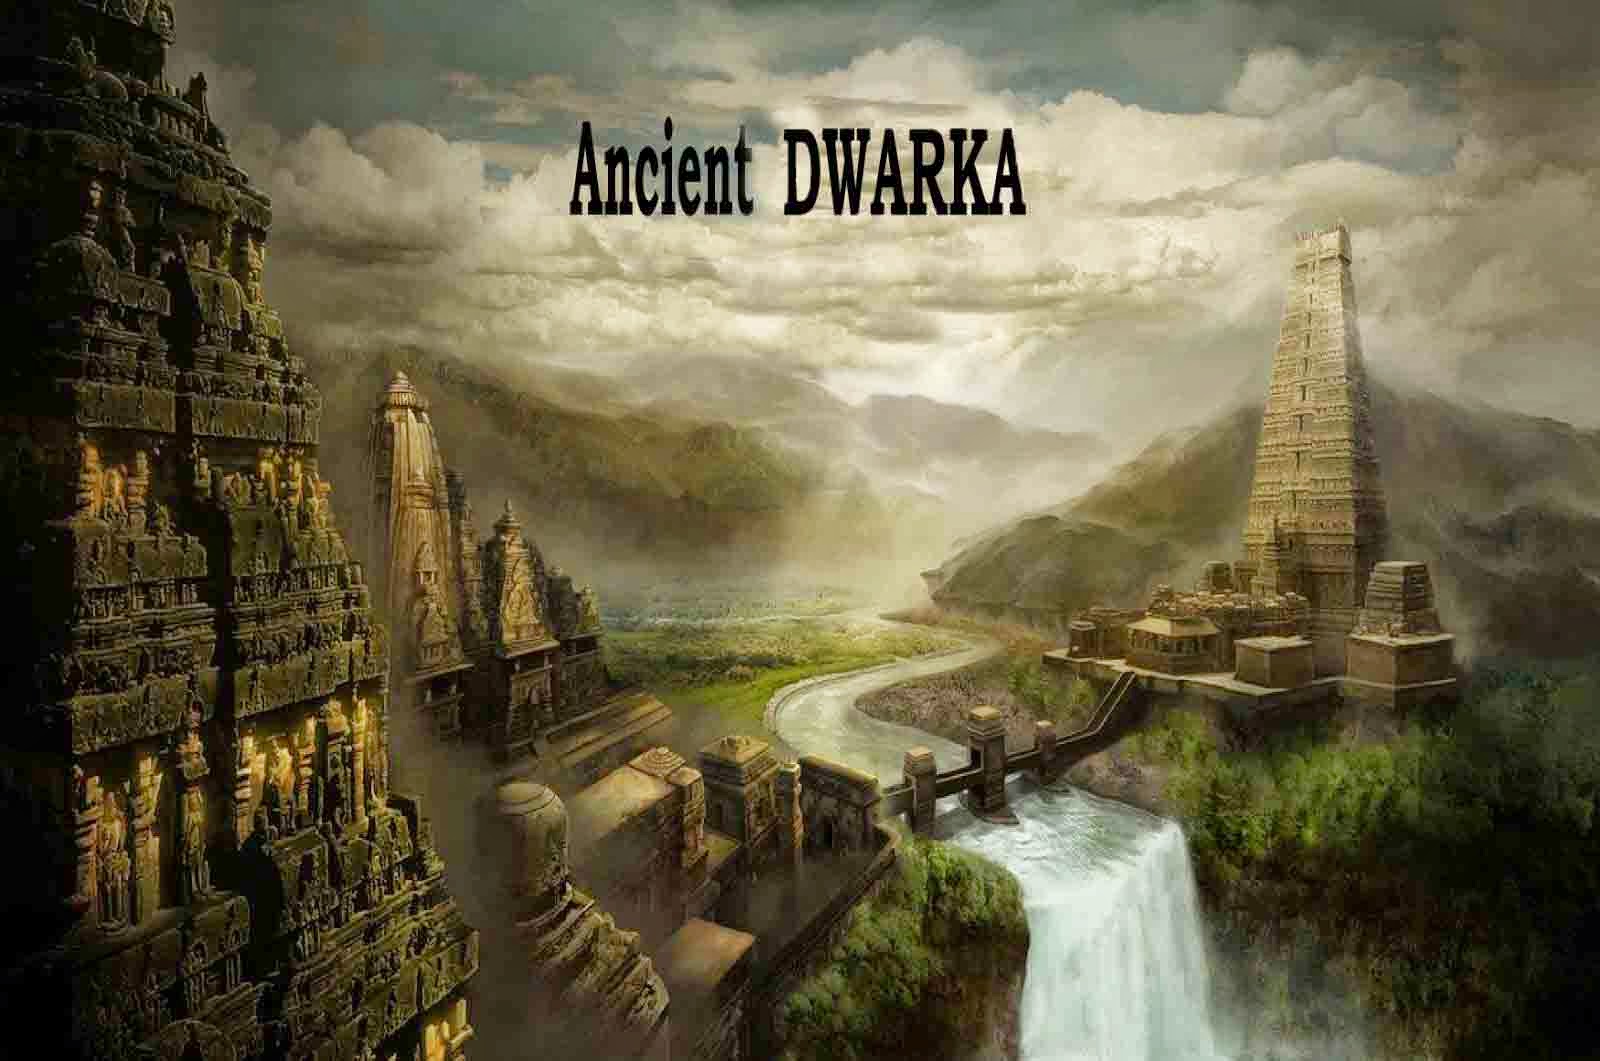 Dwarka Mythical City Found Under Water